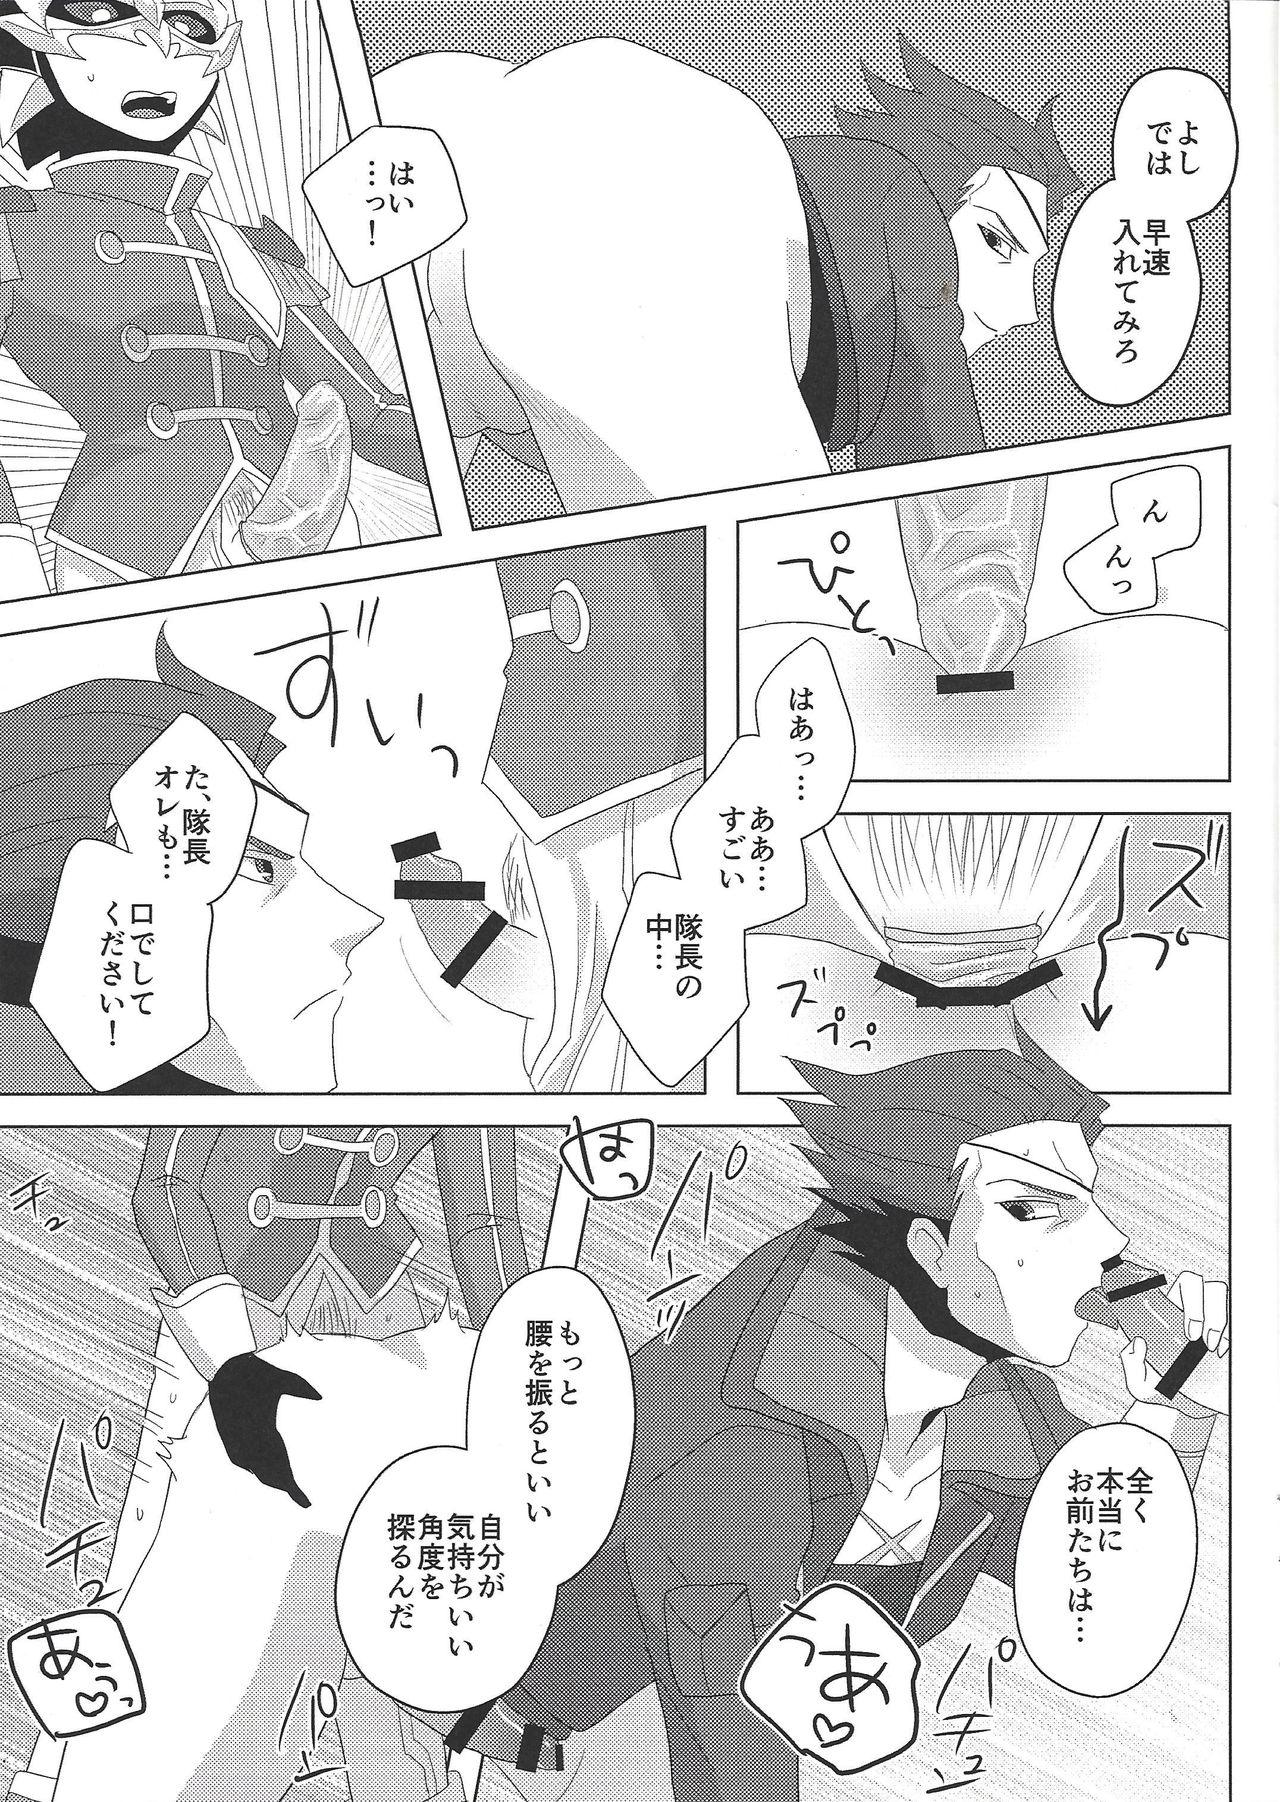 Tall Taichō! Kon'ya mo onegai shimasu! - Yu-gi-oh arc-v Ginger - Page 10